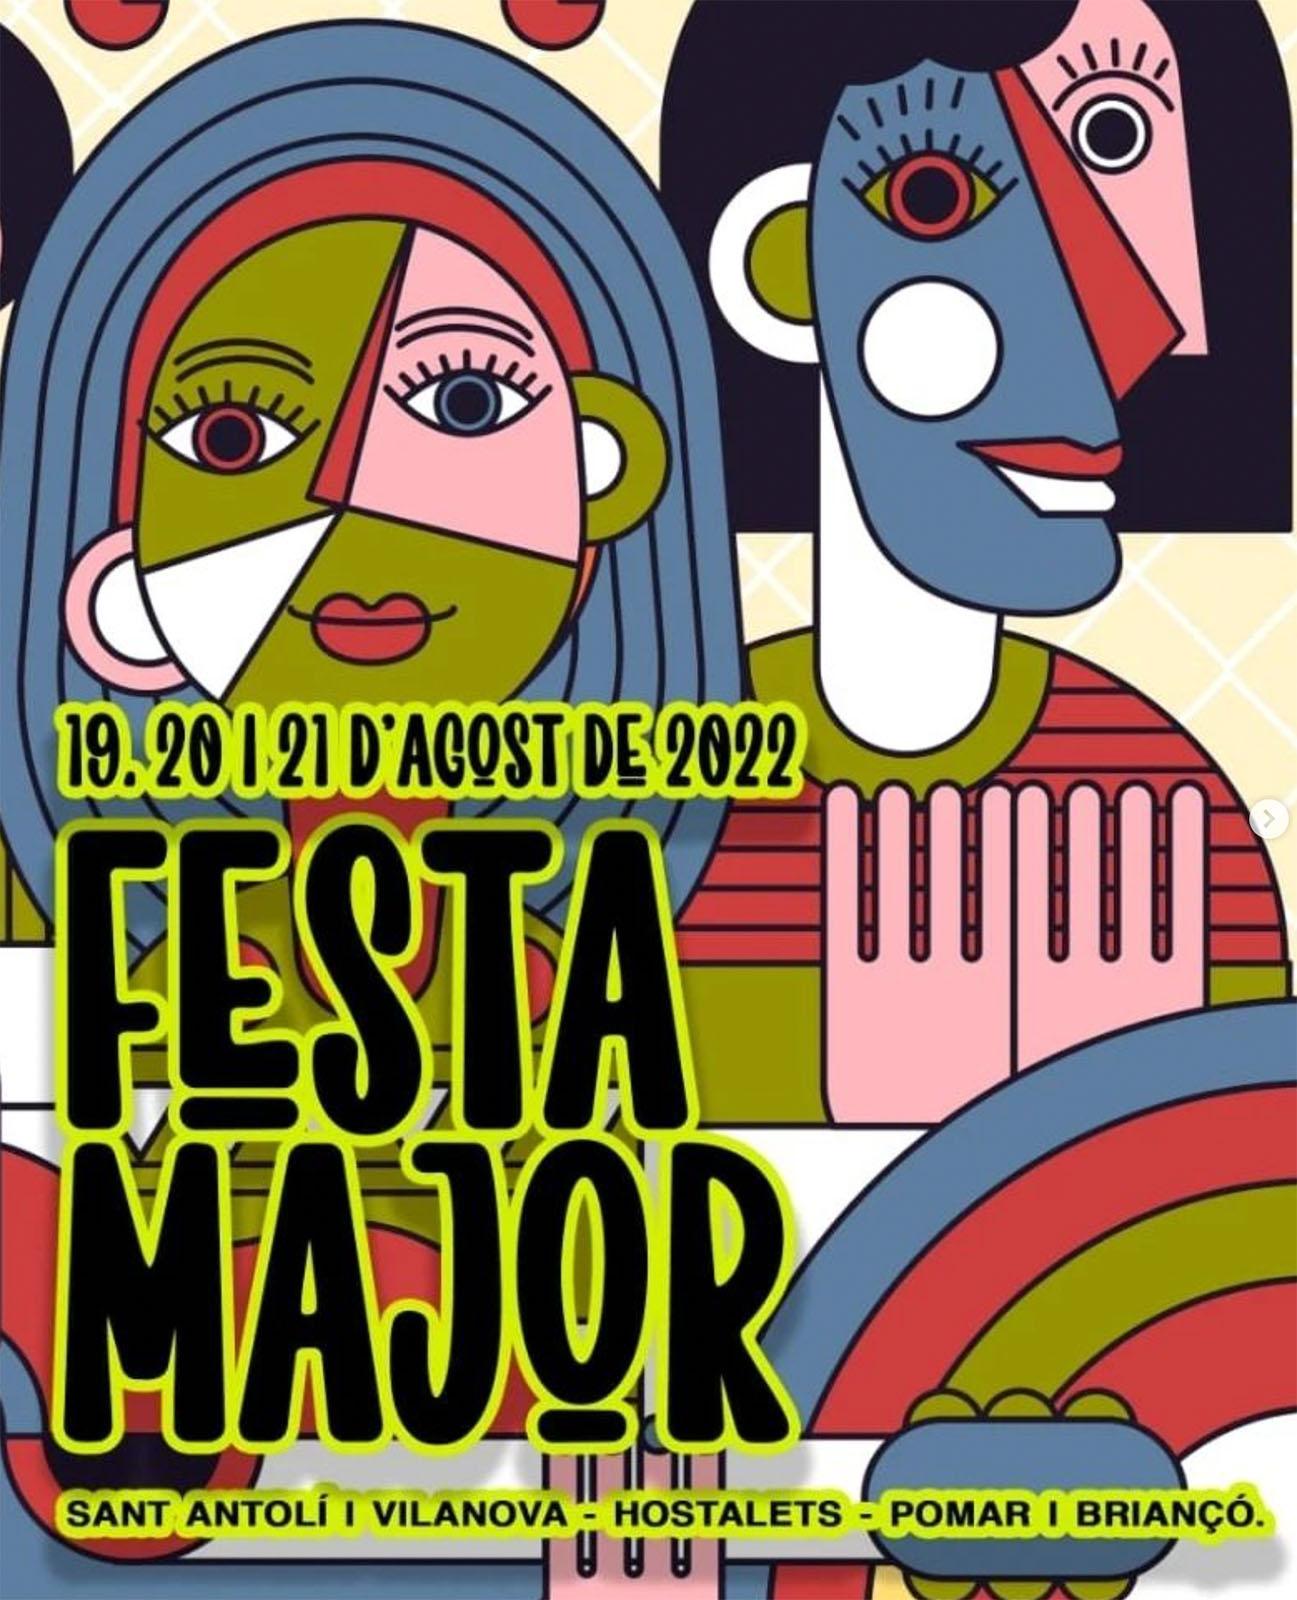 cartell Festa Major de Sant Antolí i Vilanova, Hostalets, Pomar i Briançó